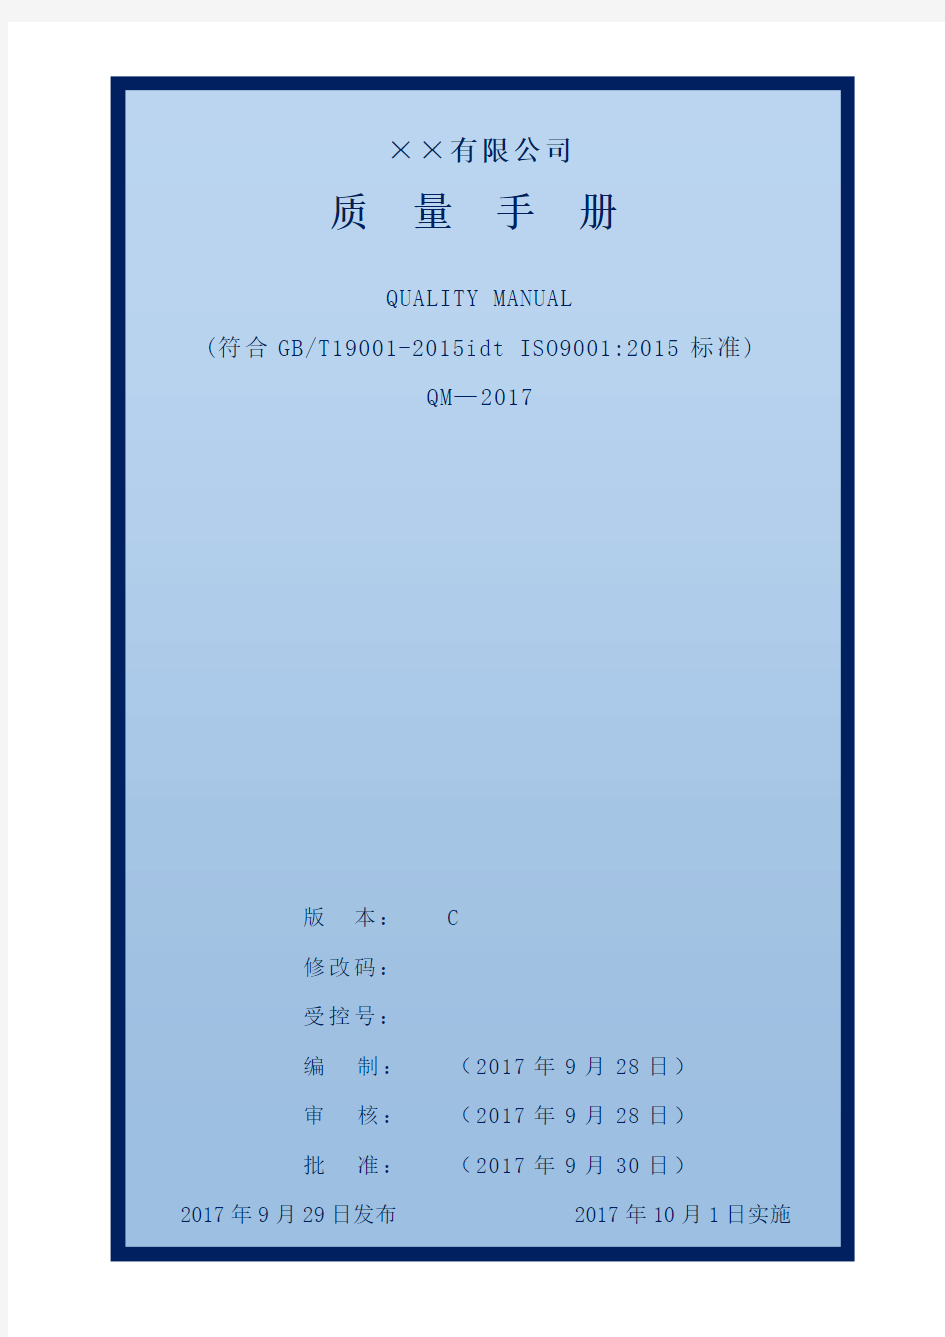 最新通用版质量手册(ISO9001-2015)参考版